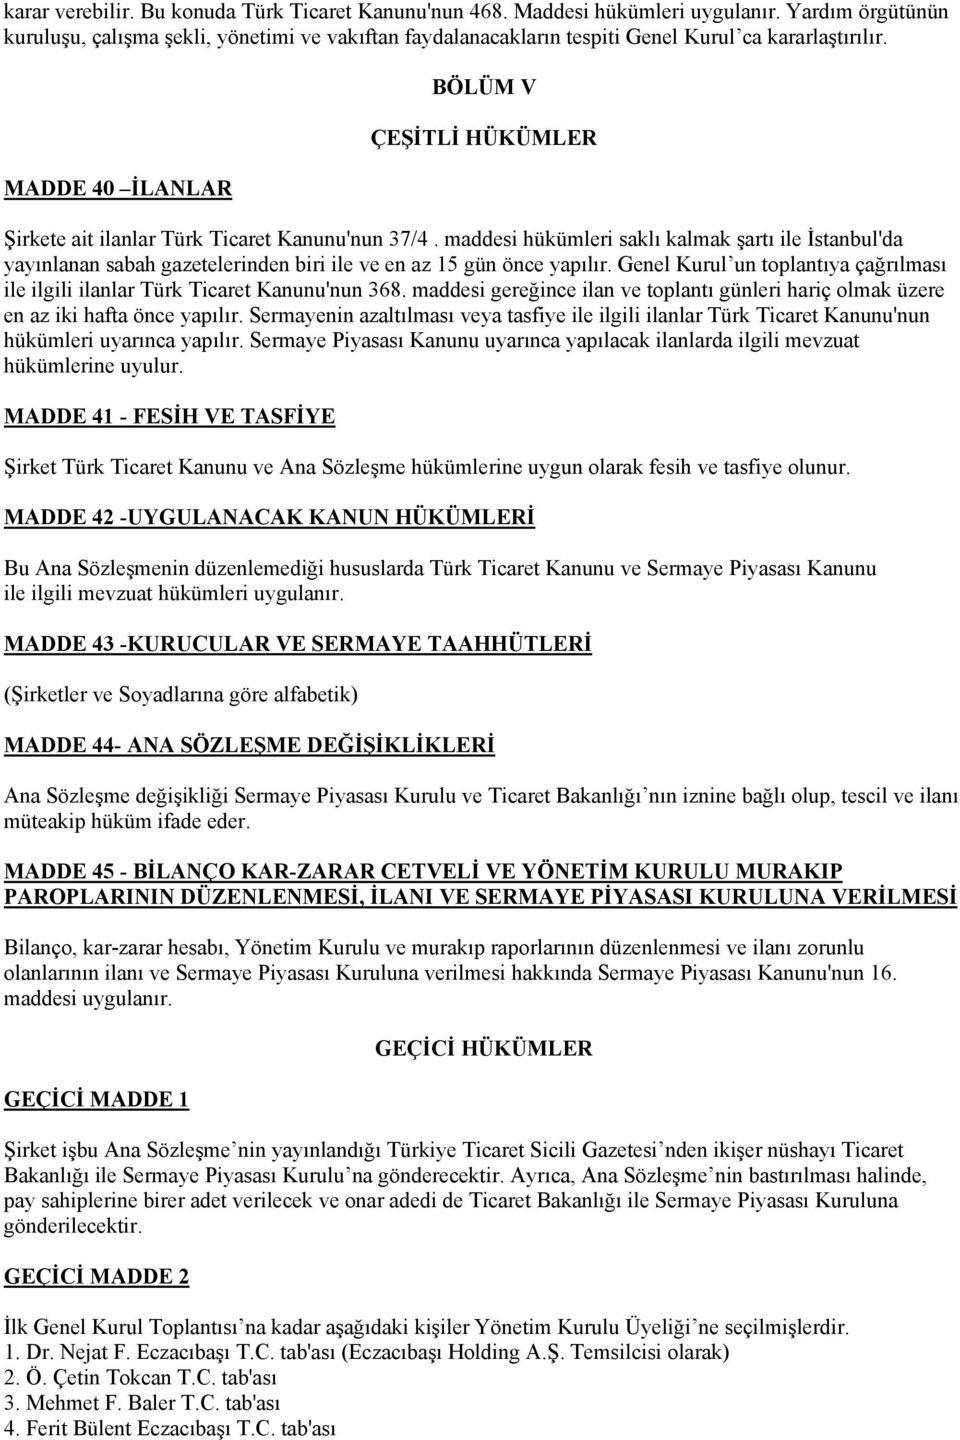 MADDE 40 İLANLAR BÖLÜM V ÇEŞİTLİ HÜKÜMLER Şirkete ait ilanlar Türk Ticaret Kanunu'nun 37/4.